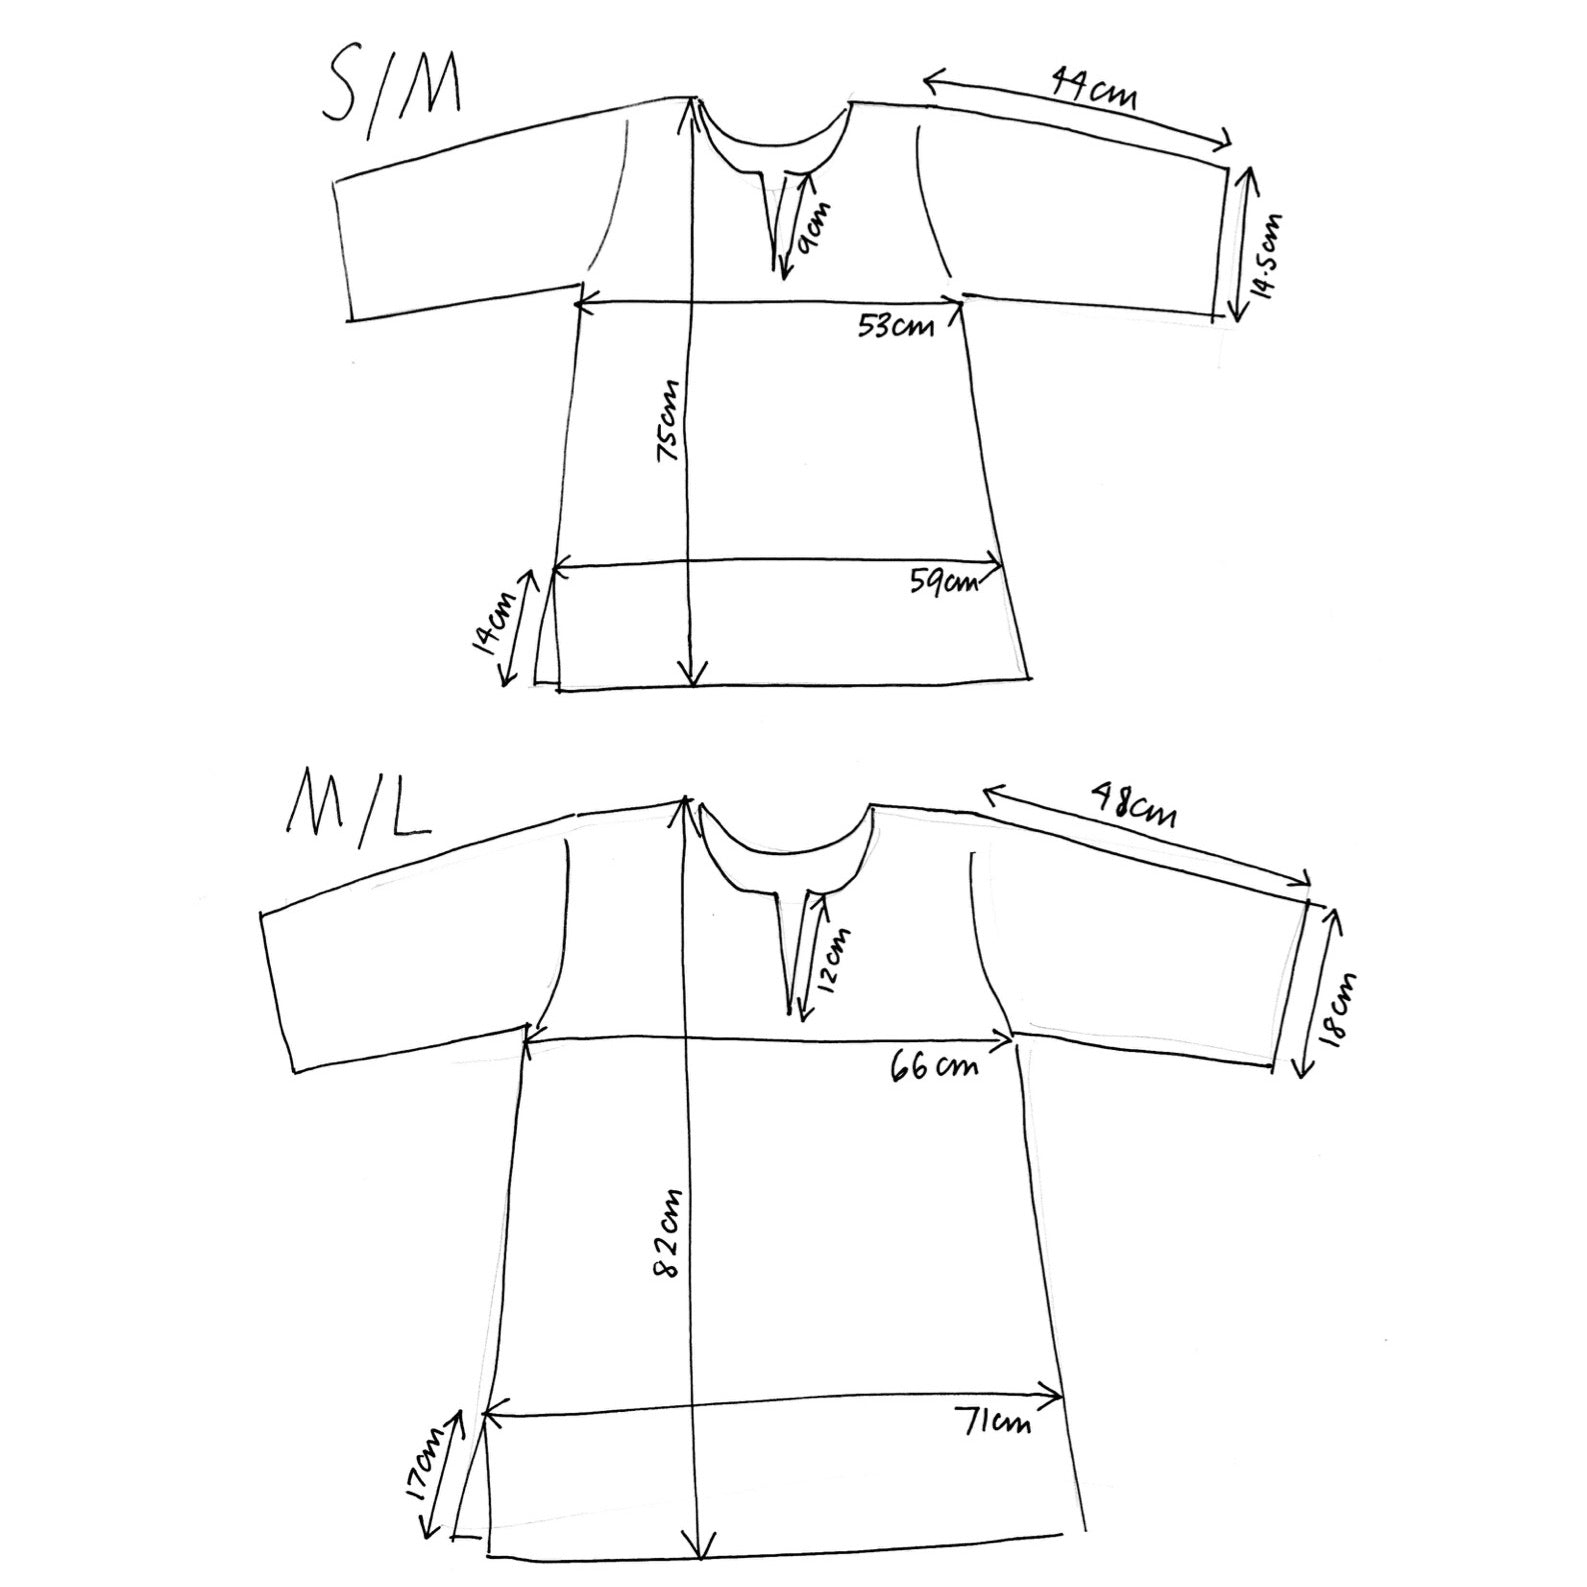 tunic dimensions